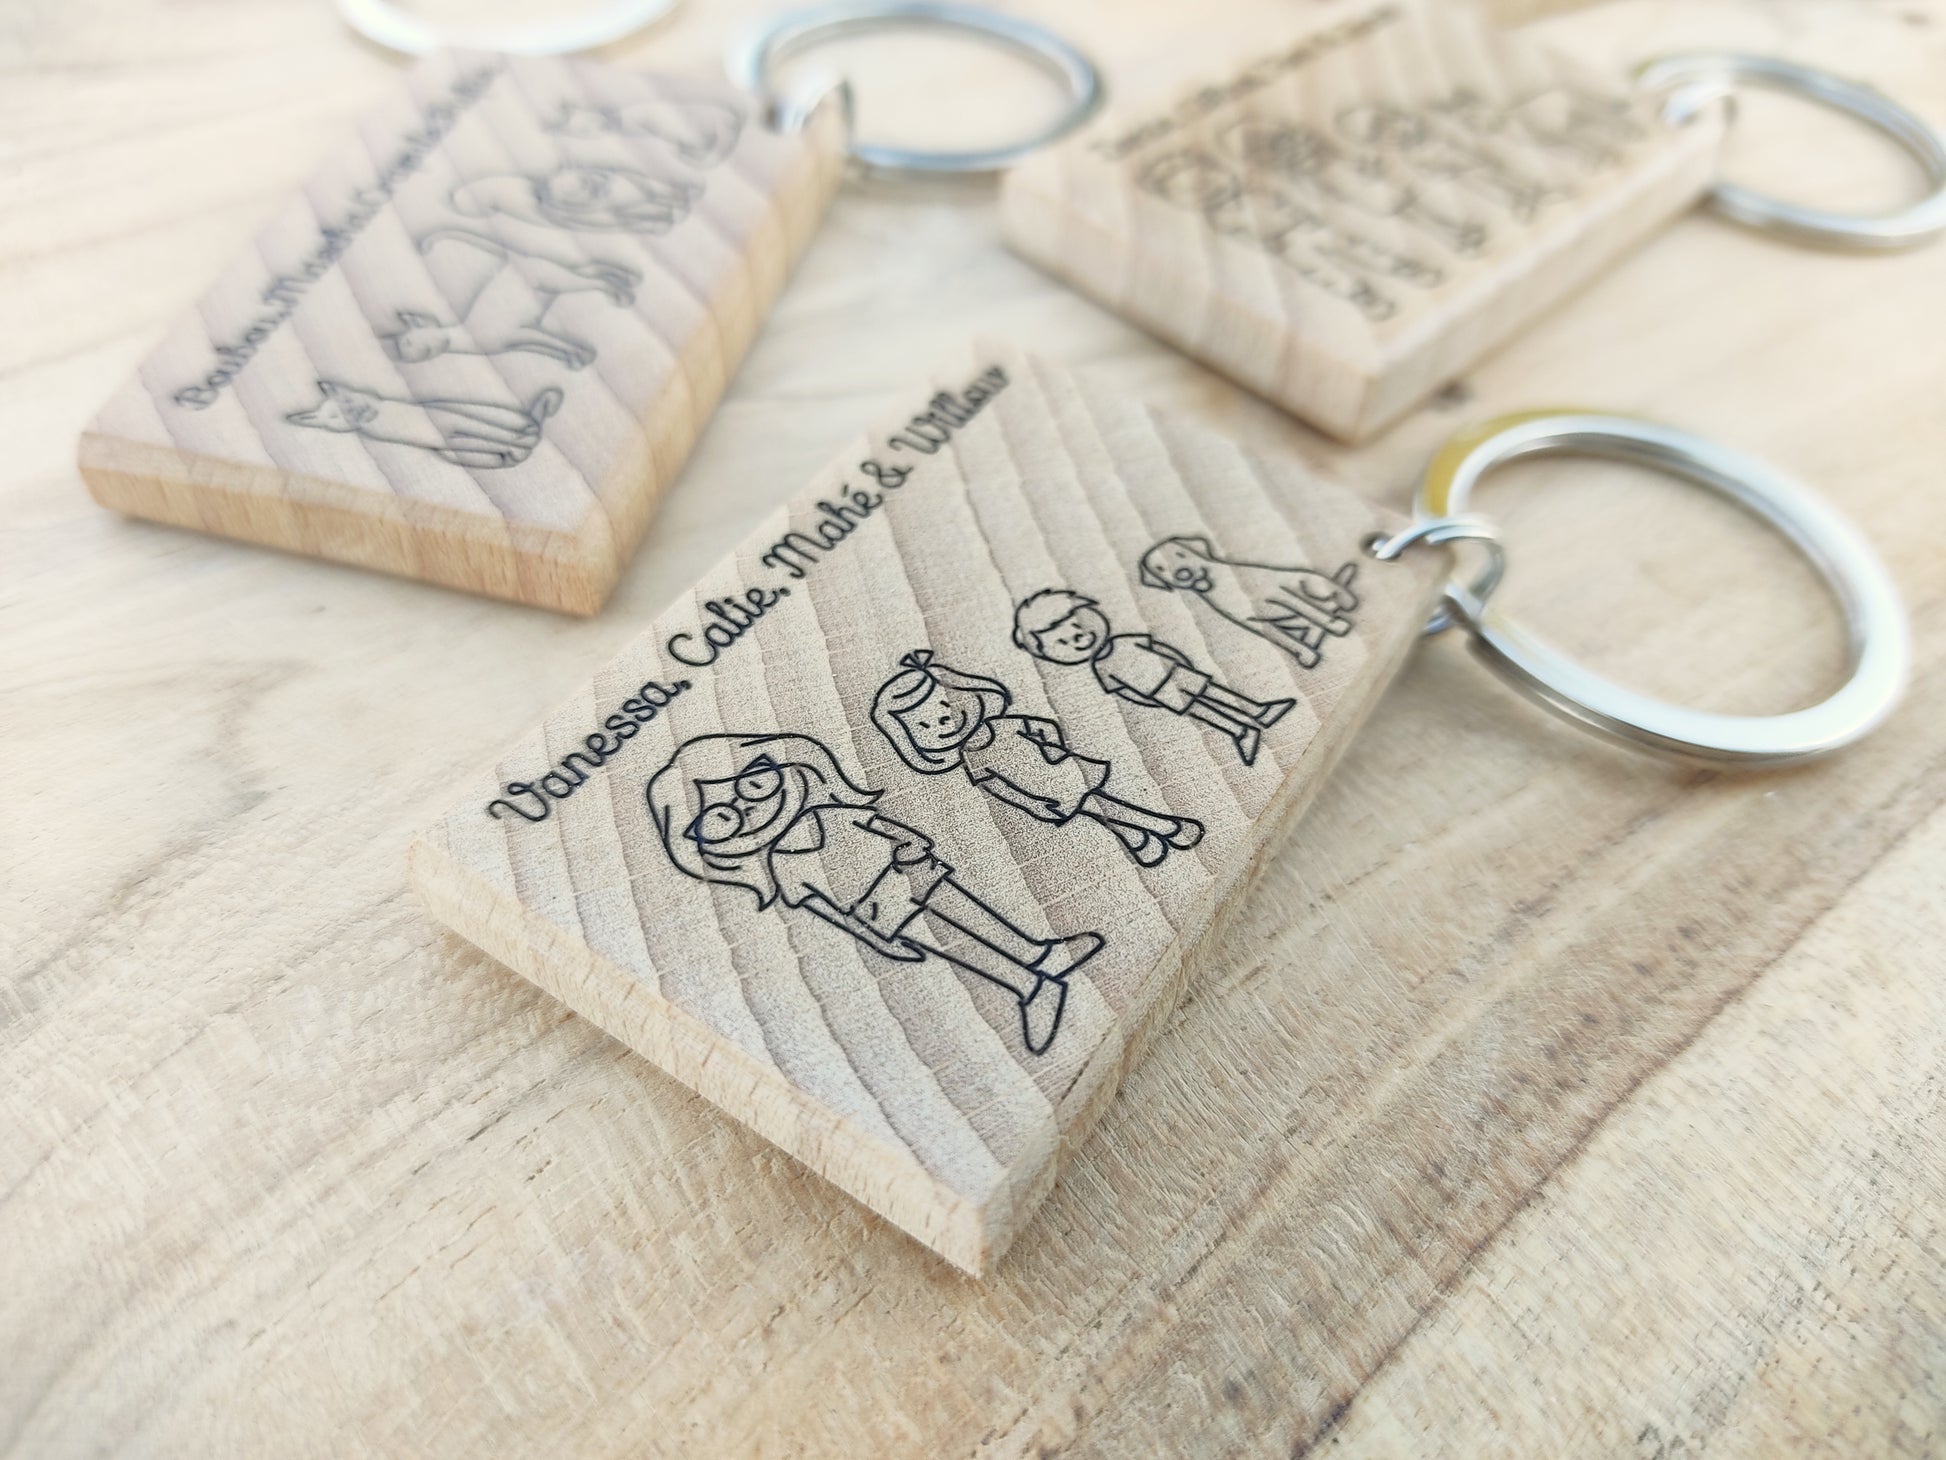 Porte clé personnalisée famille en bois – Bijou de Ré